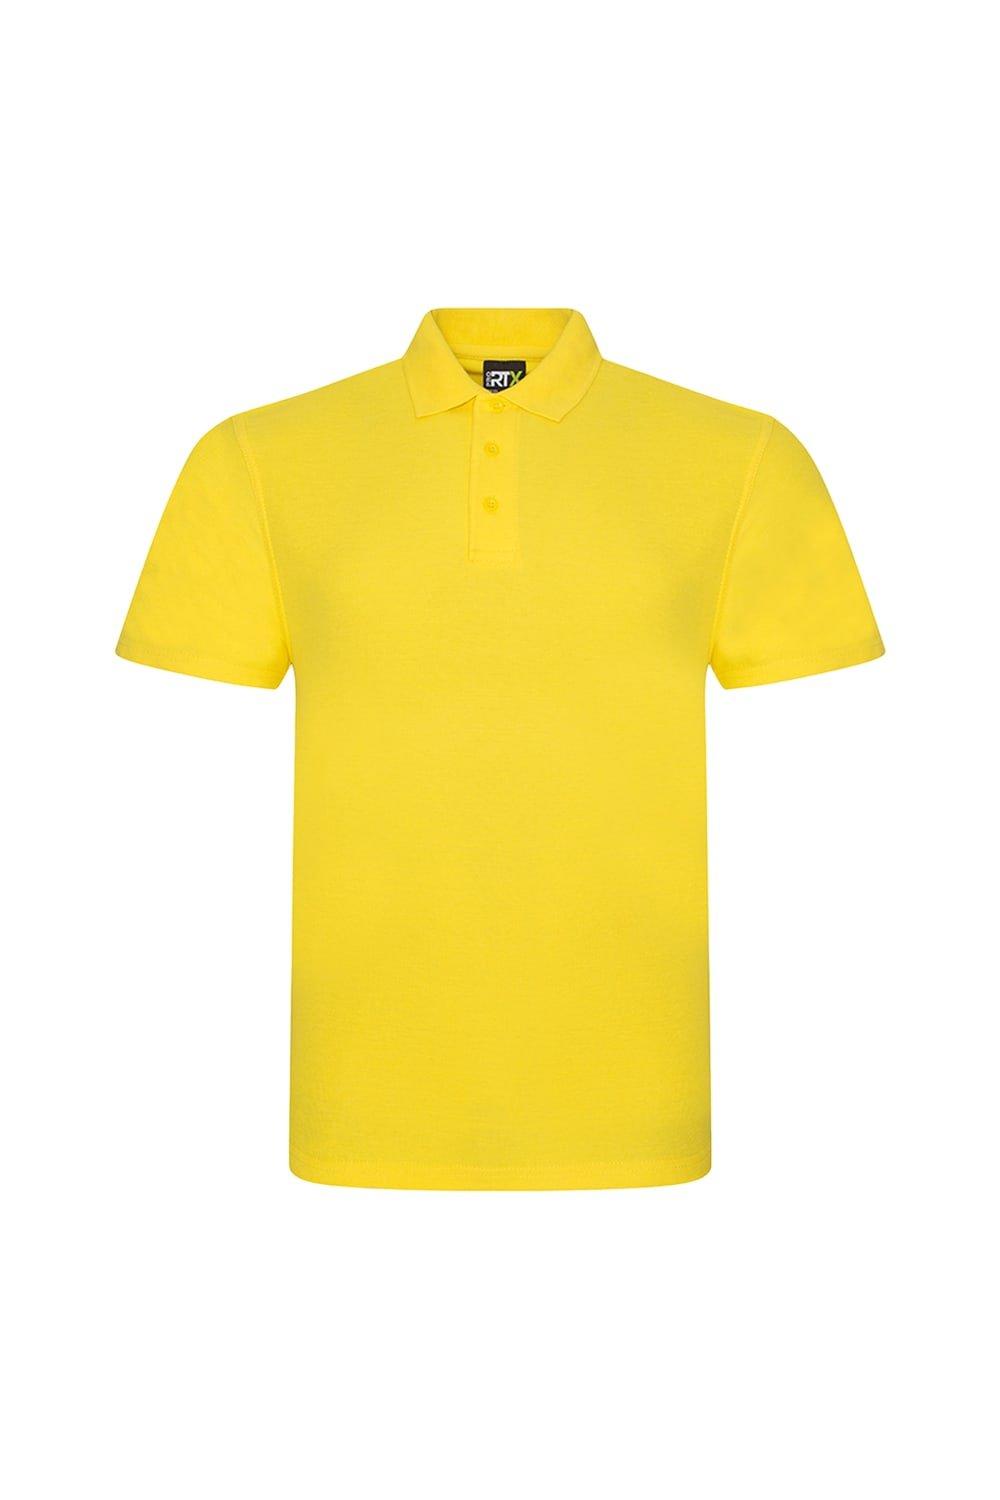 линч урсула любовь при минус пяти градусах цельсия Рубашка-поло Pro Pique PRORTX, желтый